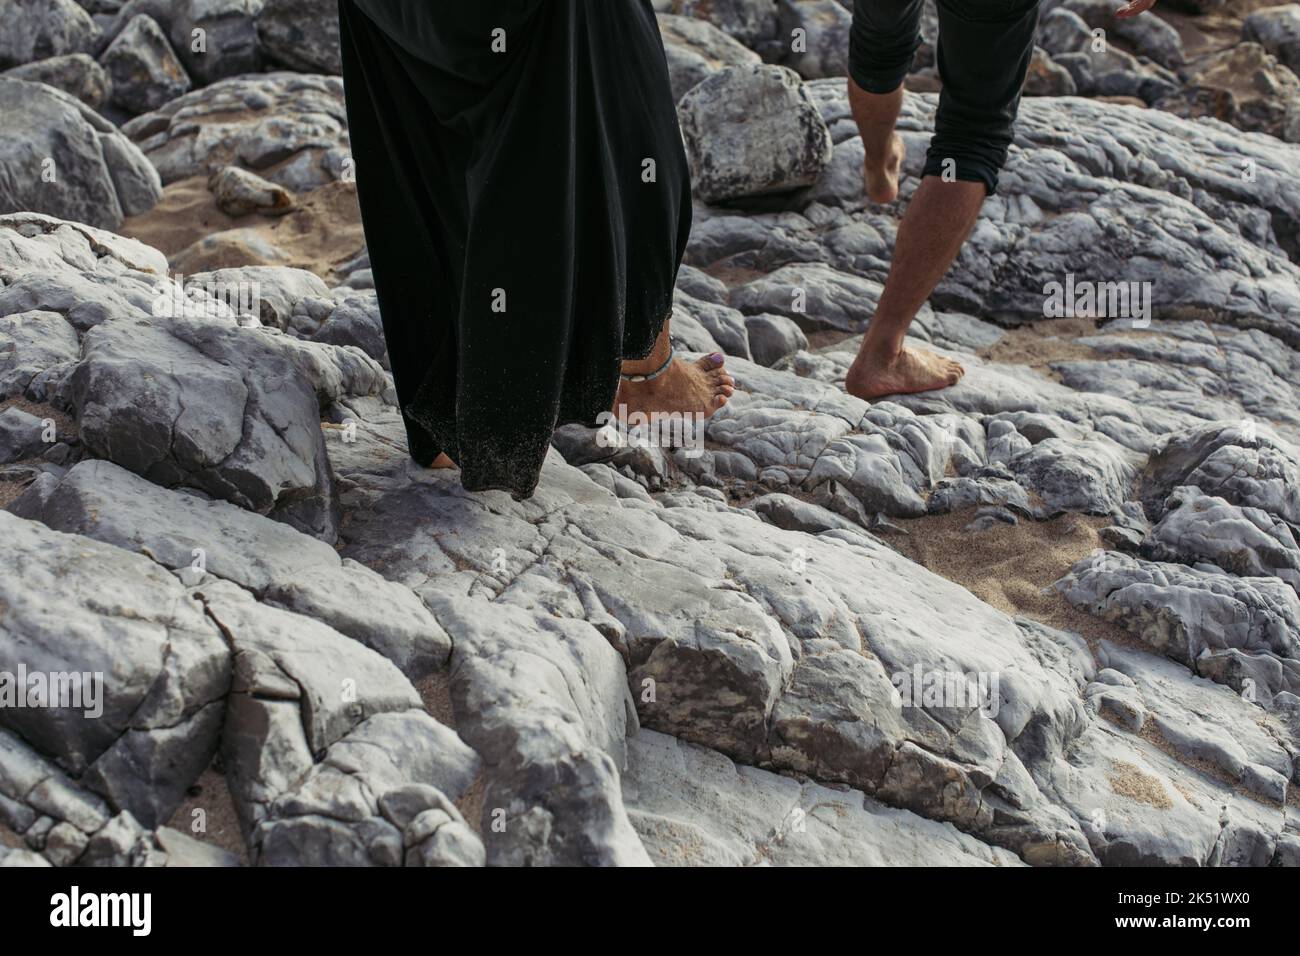 vue rognée de l'homme et de la femme pieds nus avec bracelet de cheville marchant sur des rochers, image de stock Banque D'Images